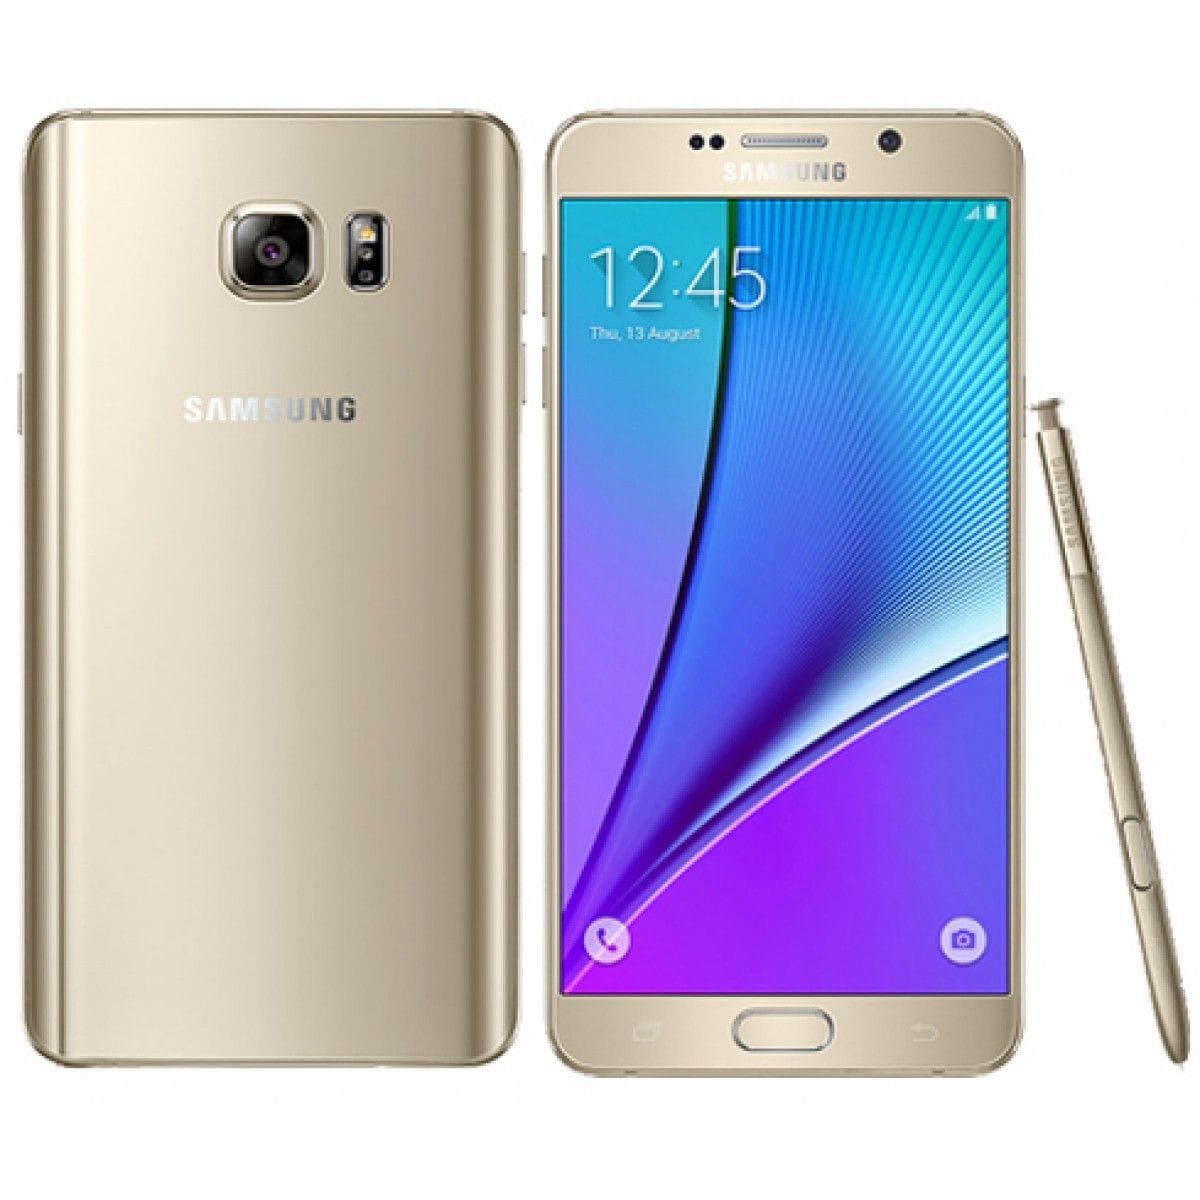 Samsung Galaxy Note 5 SM-N920i 4G LTE 5.7" 32GB GSM-Unlocked